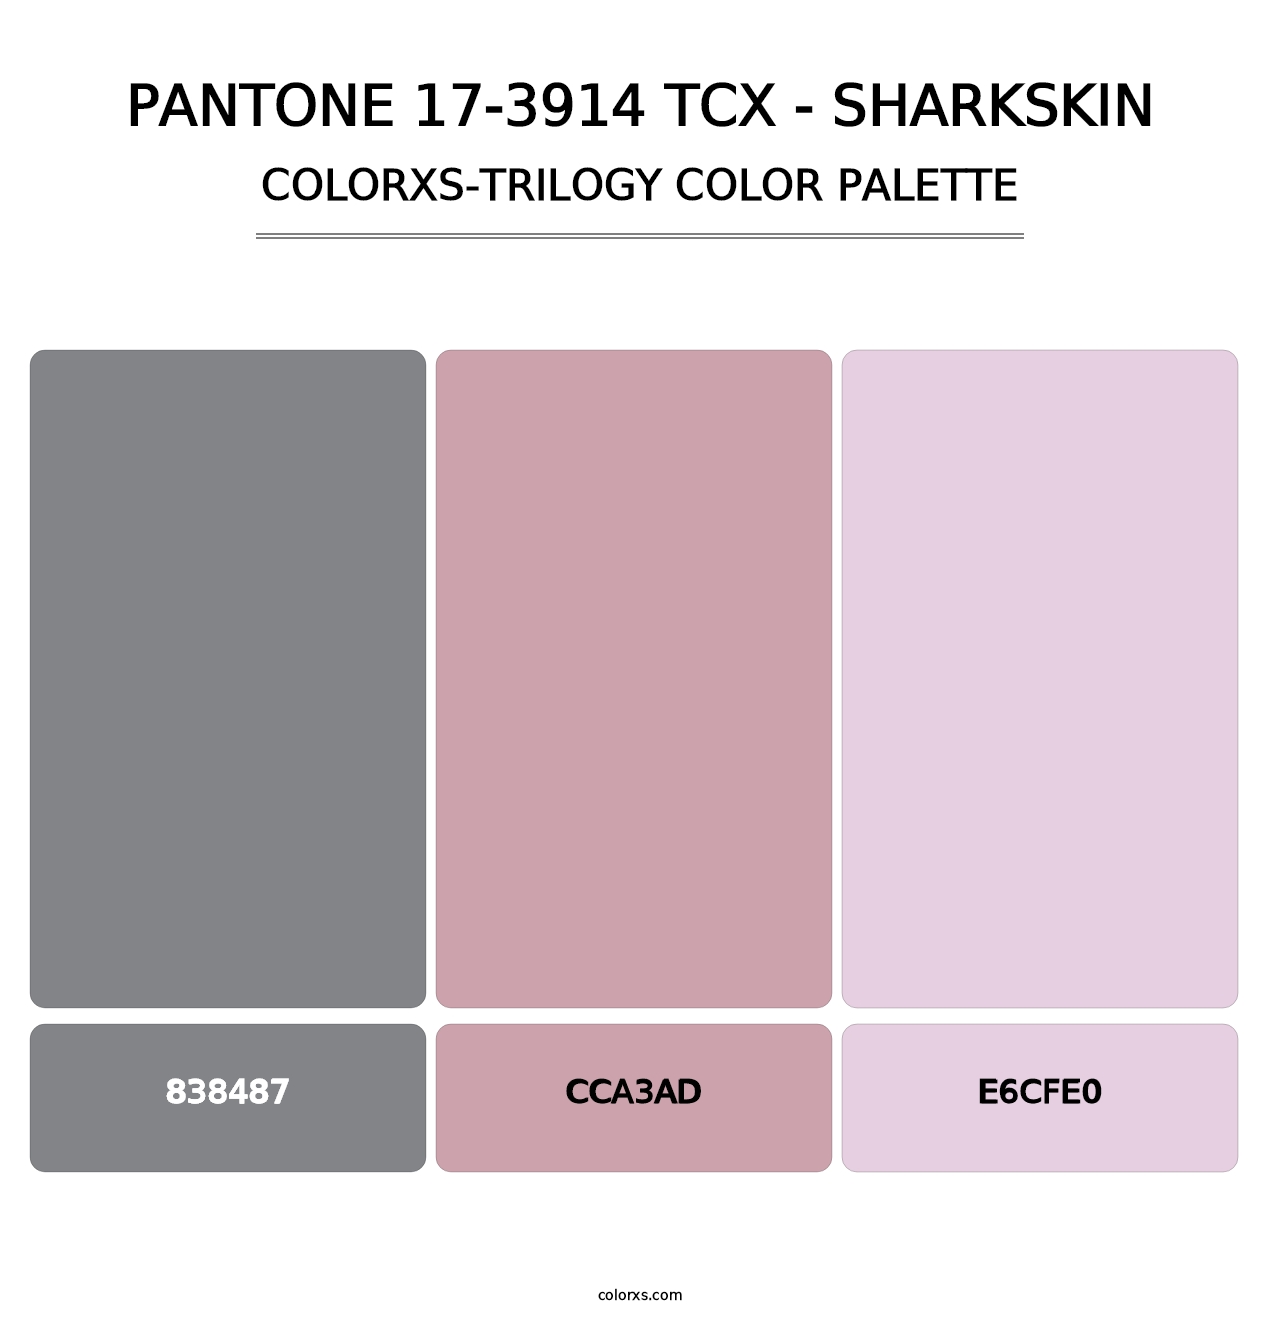 PANTONE 17-3914 TCX - Sharkskin - Colorxs Trilogy Palette